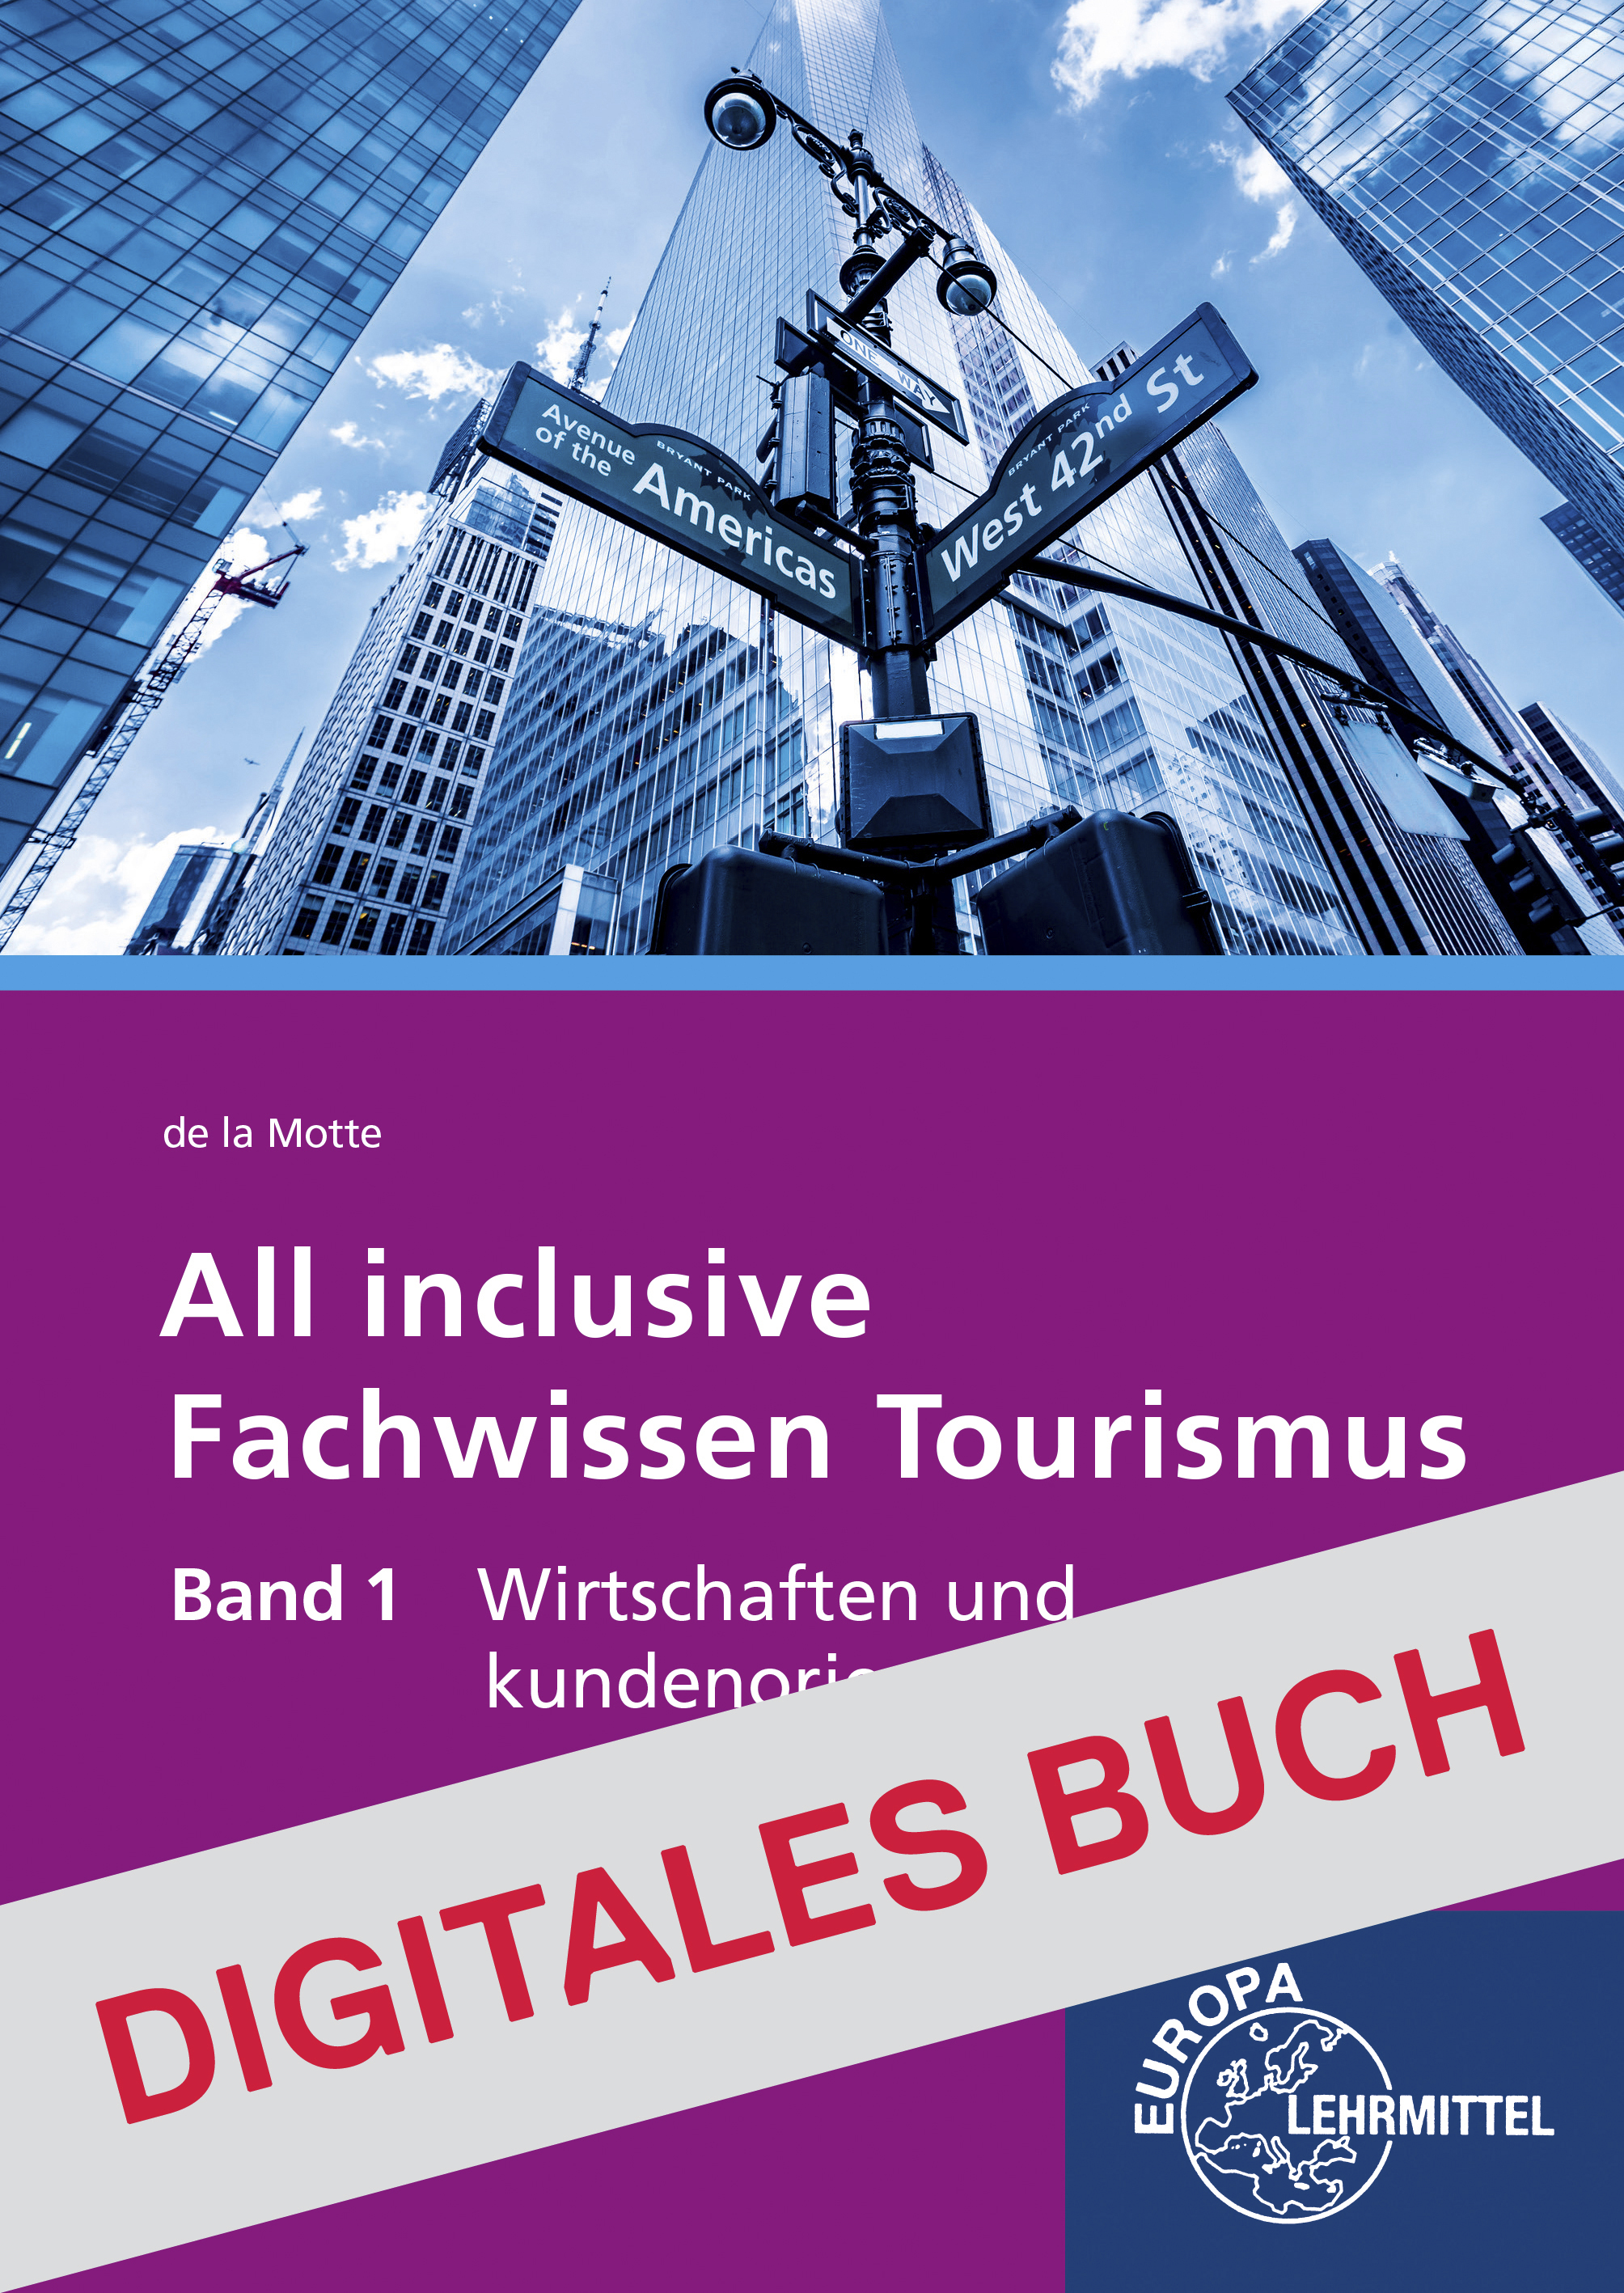 All inclusive - Fachwissen Tourismus Band 1 - Digitales Buch